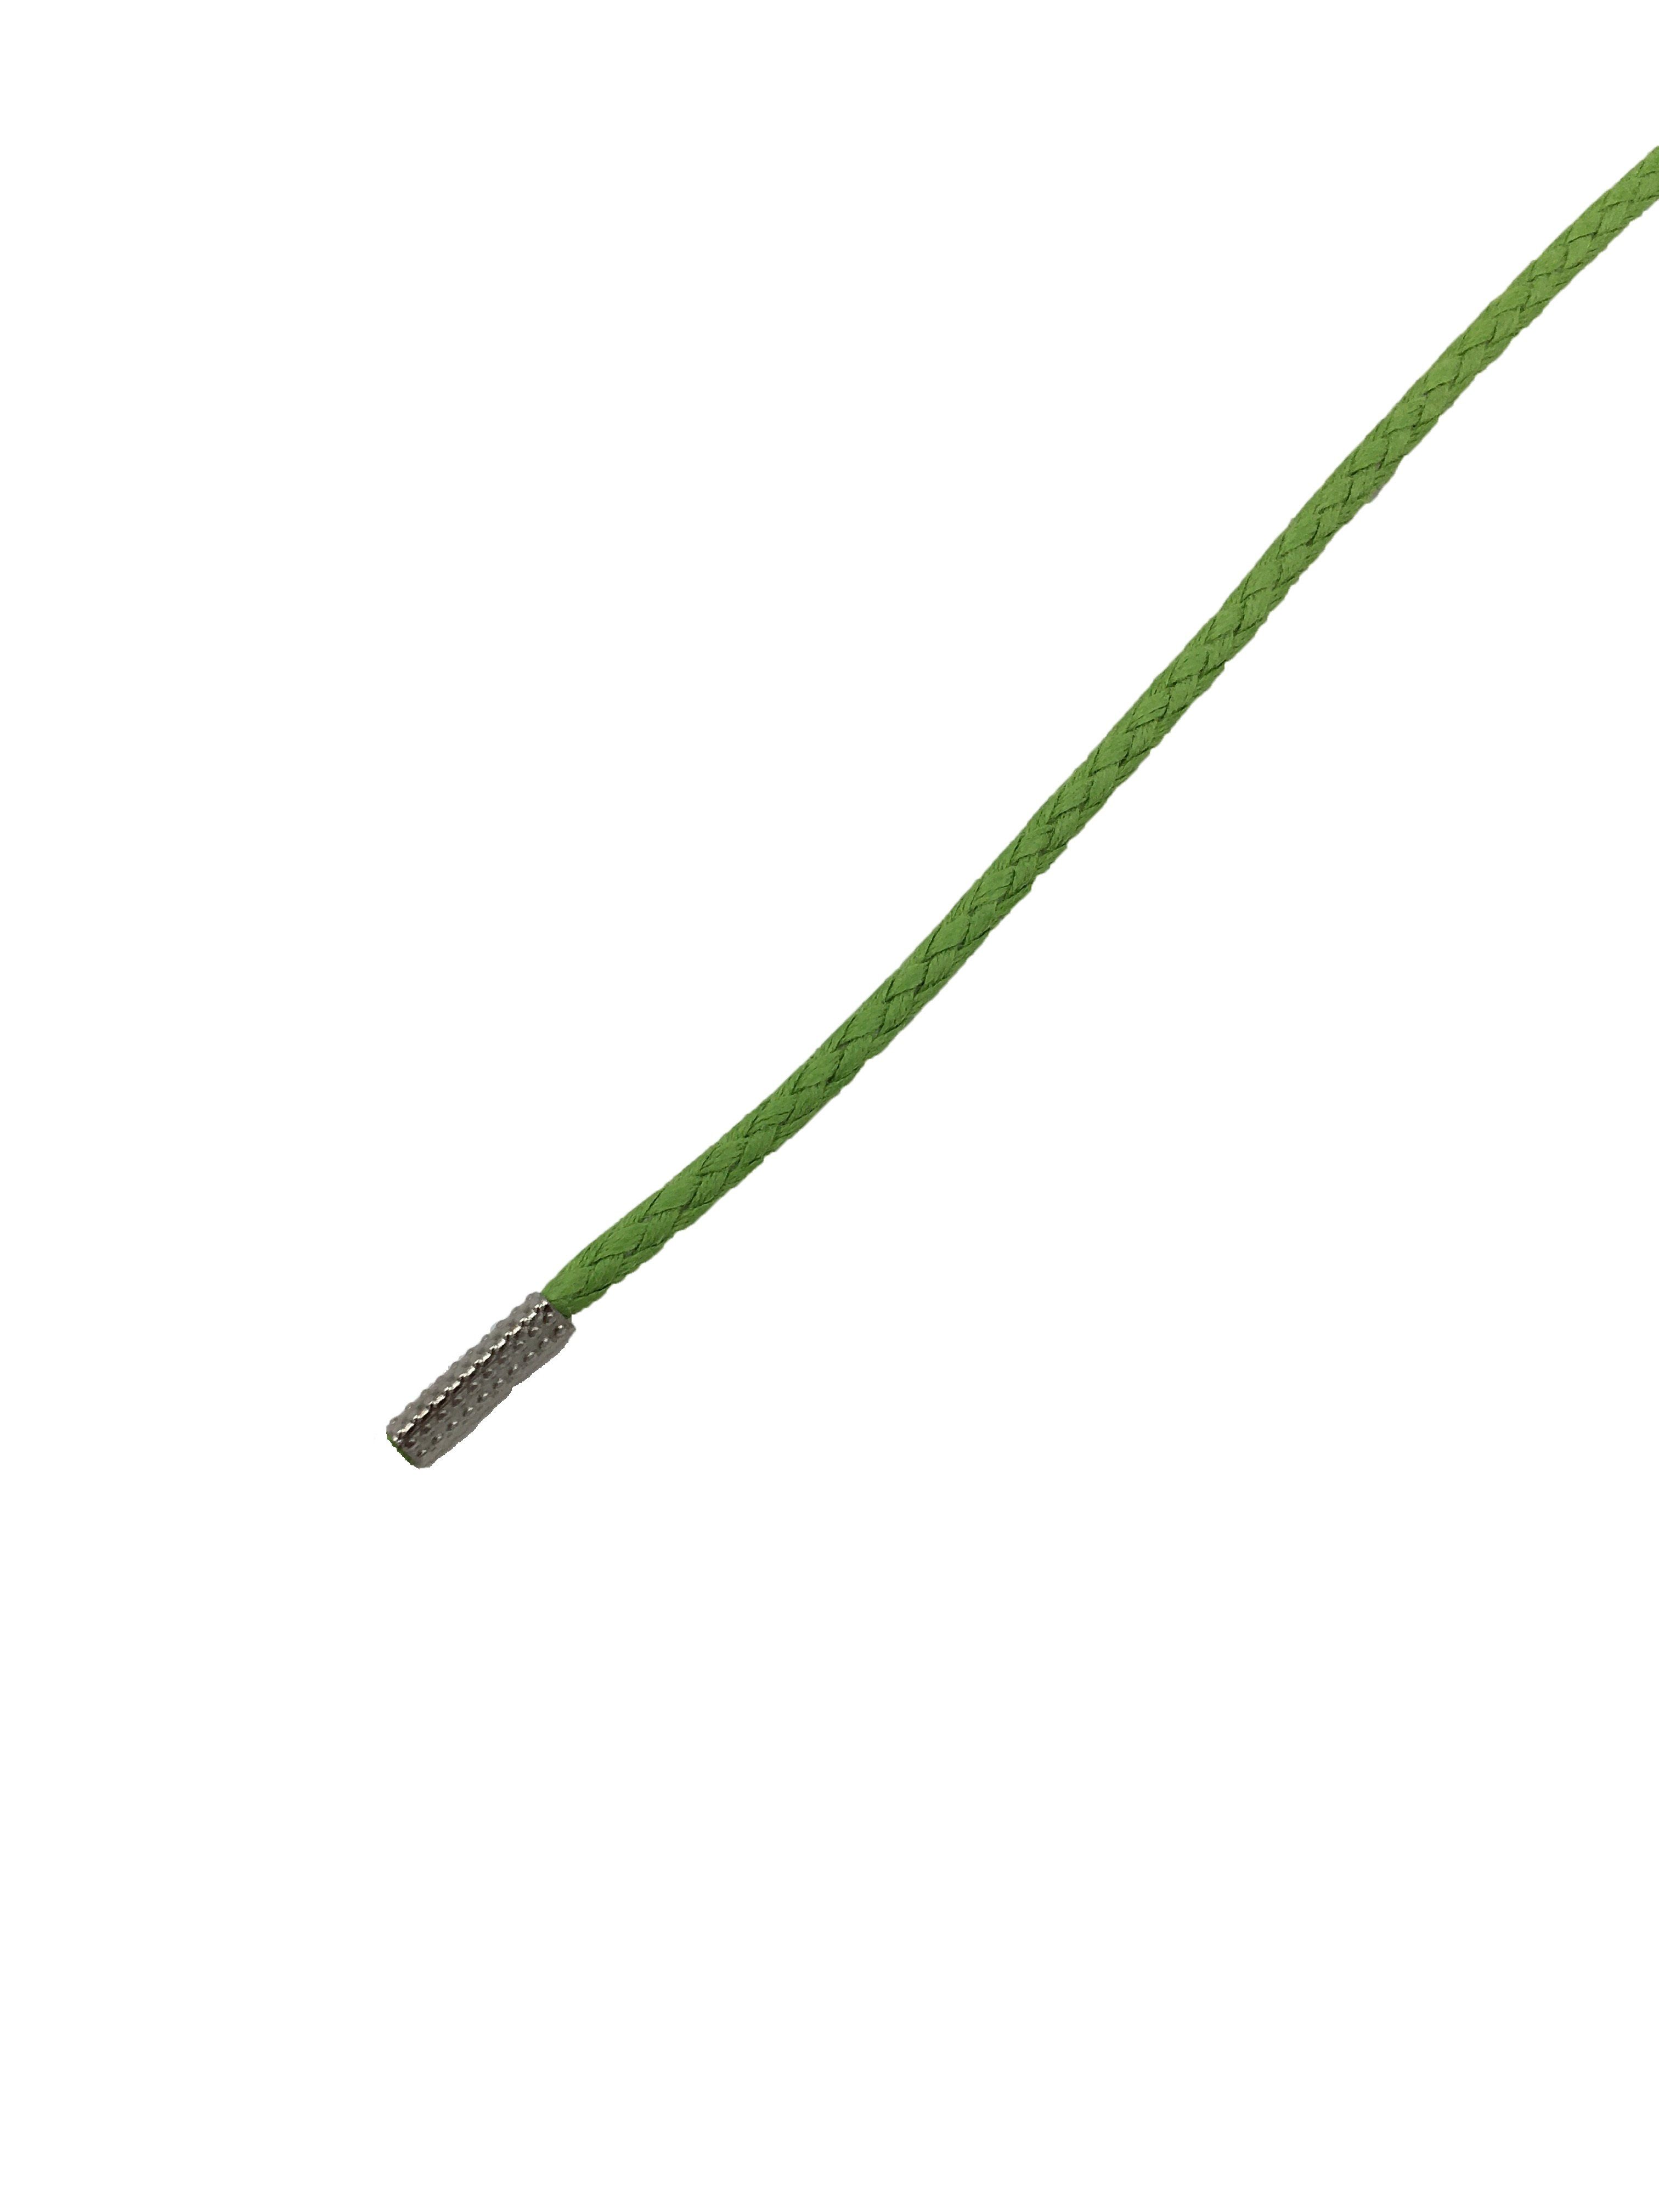 Rema Schnürsenkel Rema Schnürsenkel Hellgrün - rund - gewachst - Kordel - ca. 2,5 mm dünn für Sie nach Wunschlänge geschnitten und mit Metallenden versehen